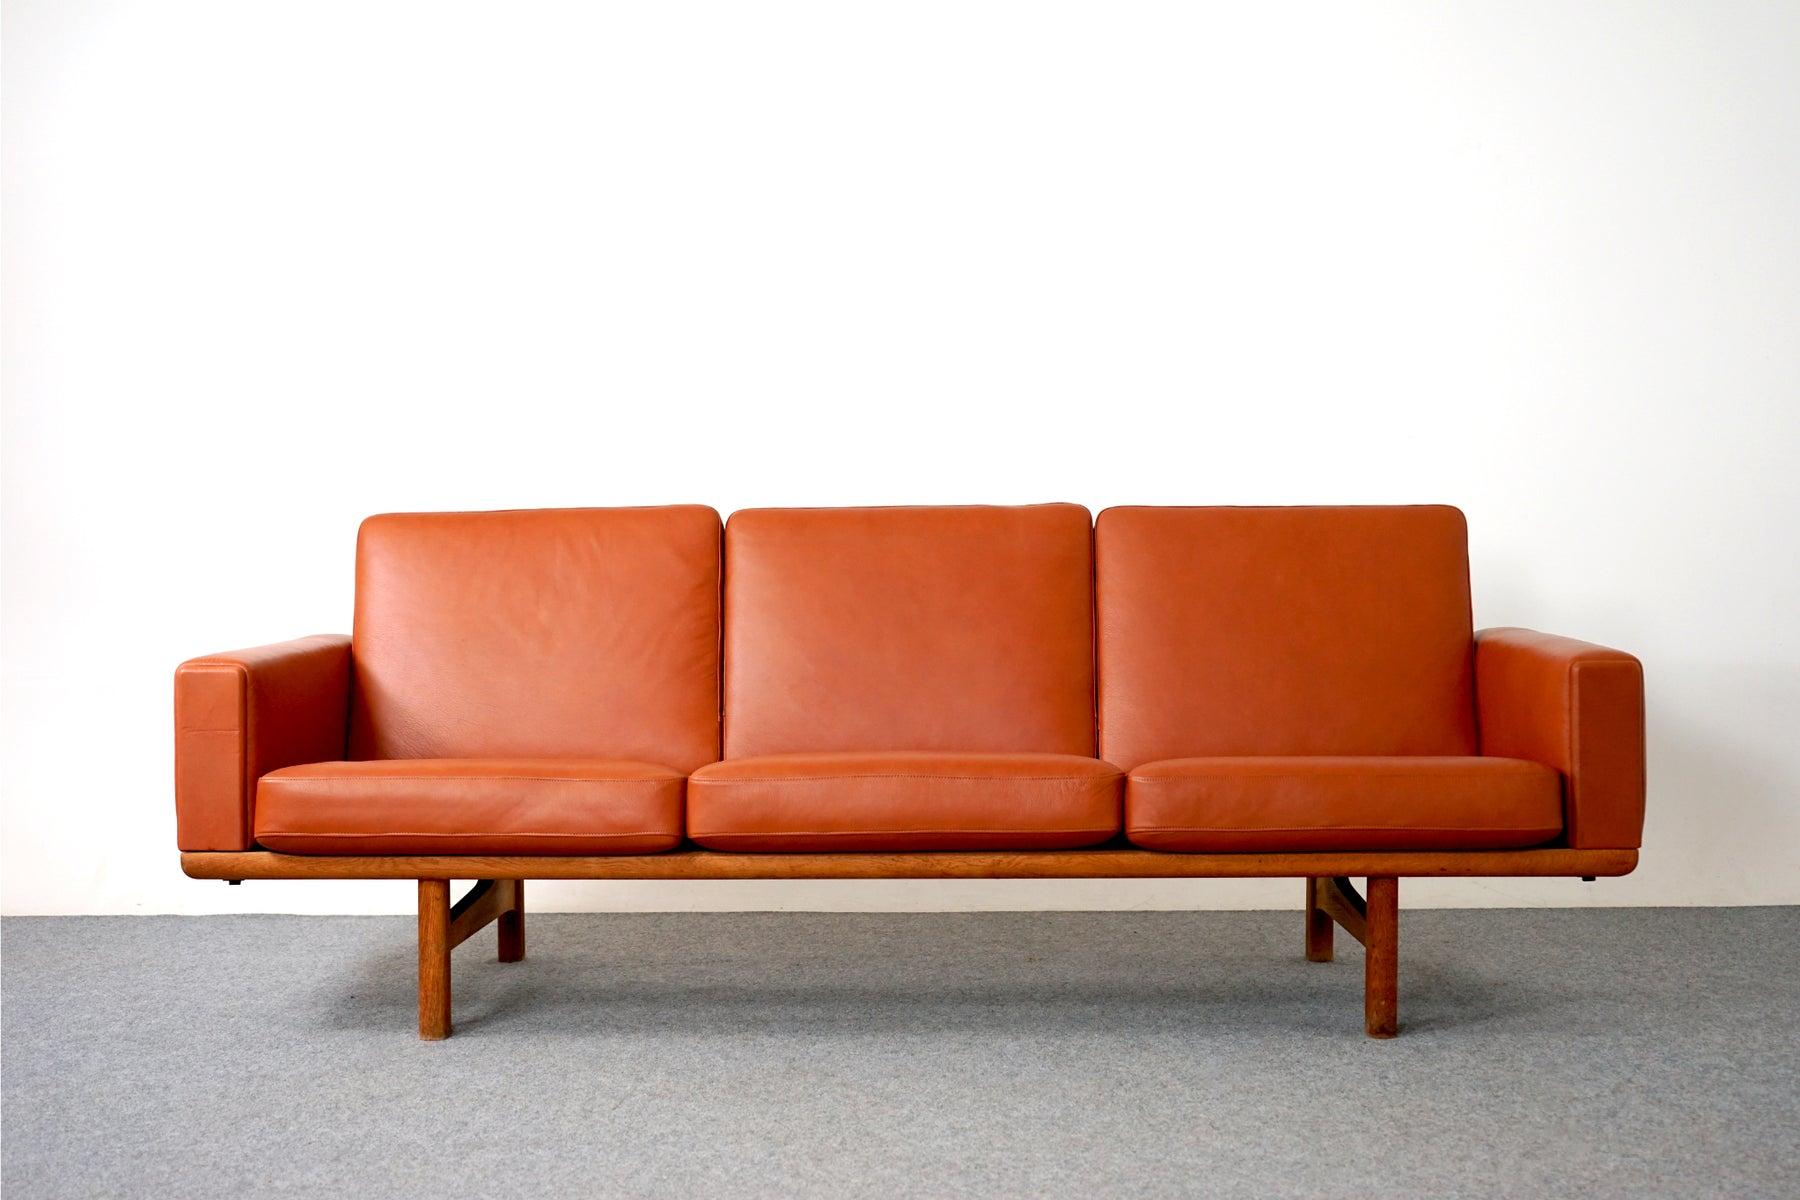 Dänisches Sofa aus Eiche und Leder, Modell GE 236/3 von Hans Wegner für Getama, ca. 1960. Das Gestell des Dreisitzer-Sofas ist aus massiver Eiche gefertigt. Die abnehmbaren, neu gestalteten cognacfarbenen Lederkissen sind mit originalen Metallfedern